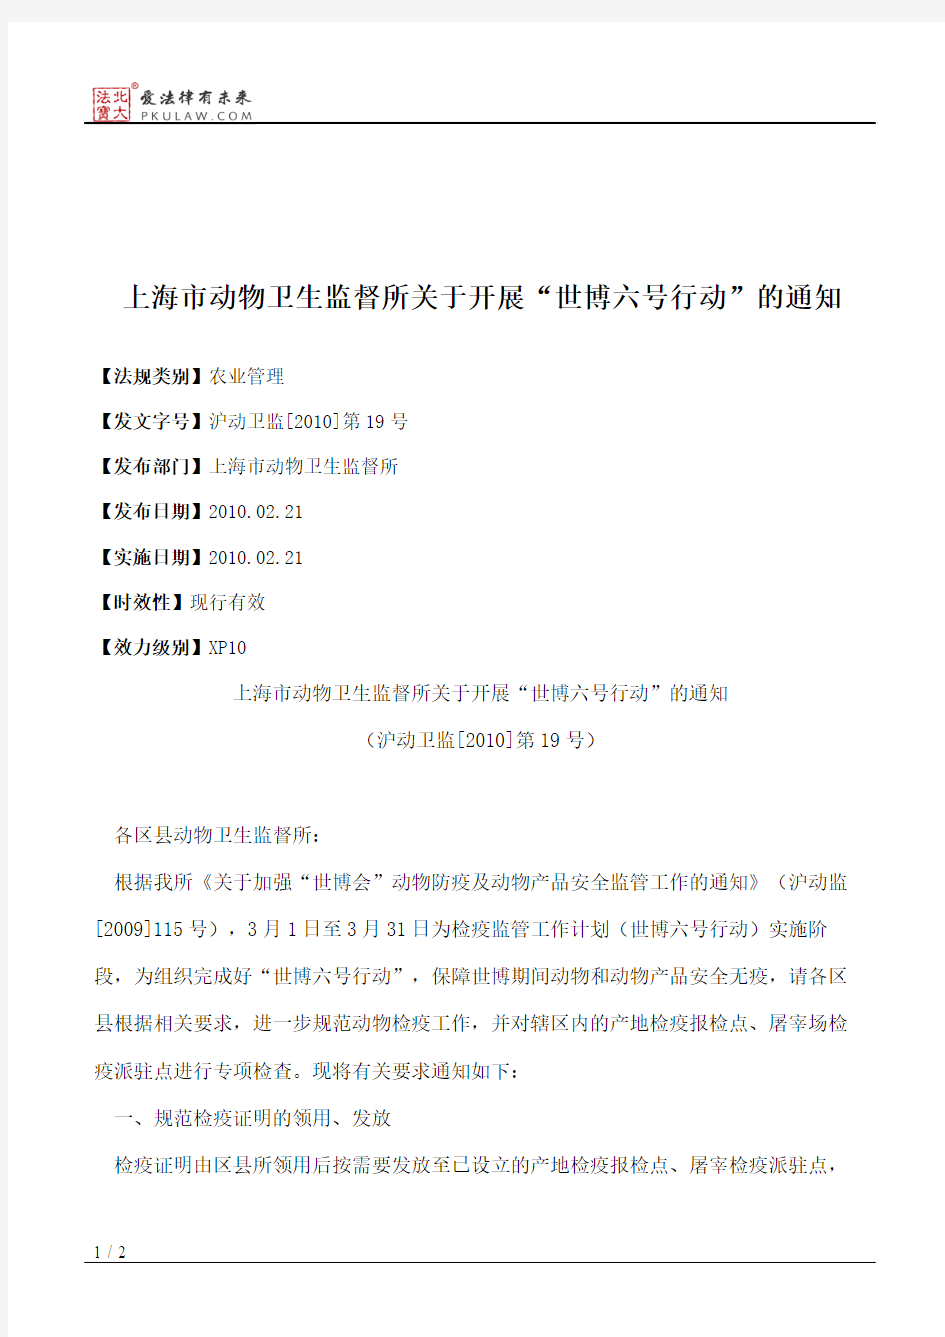 上海市动物卫生监督所关于开展“世博六号行动”的通知